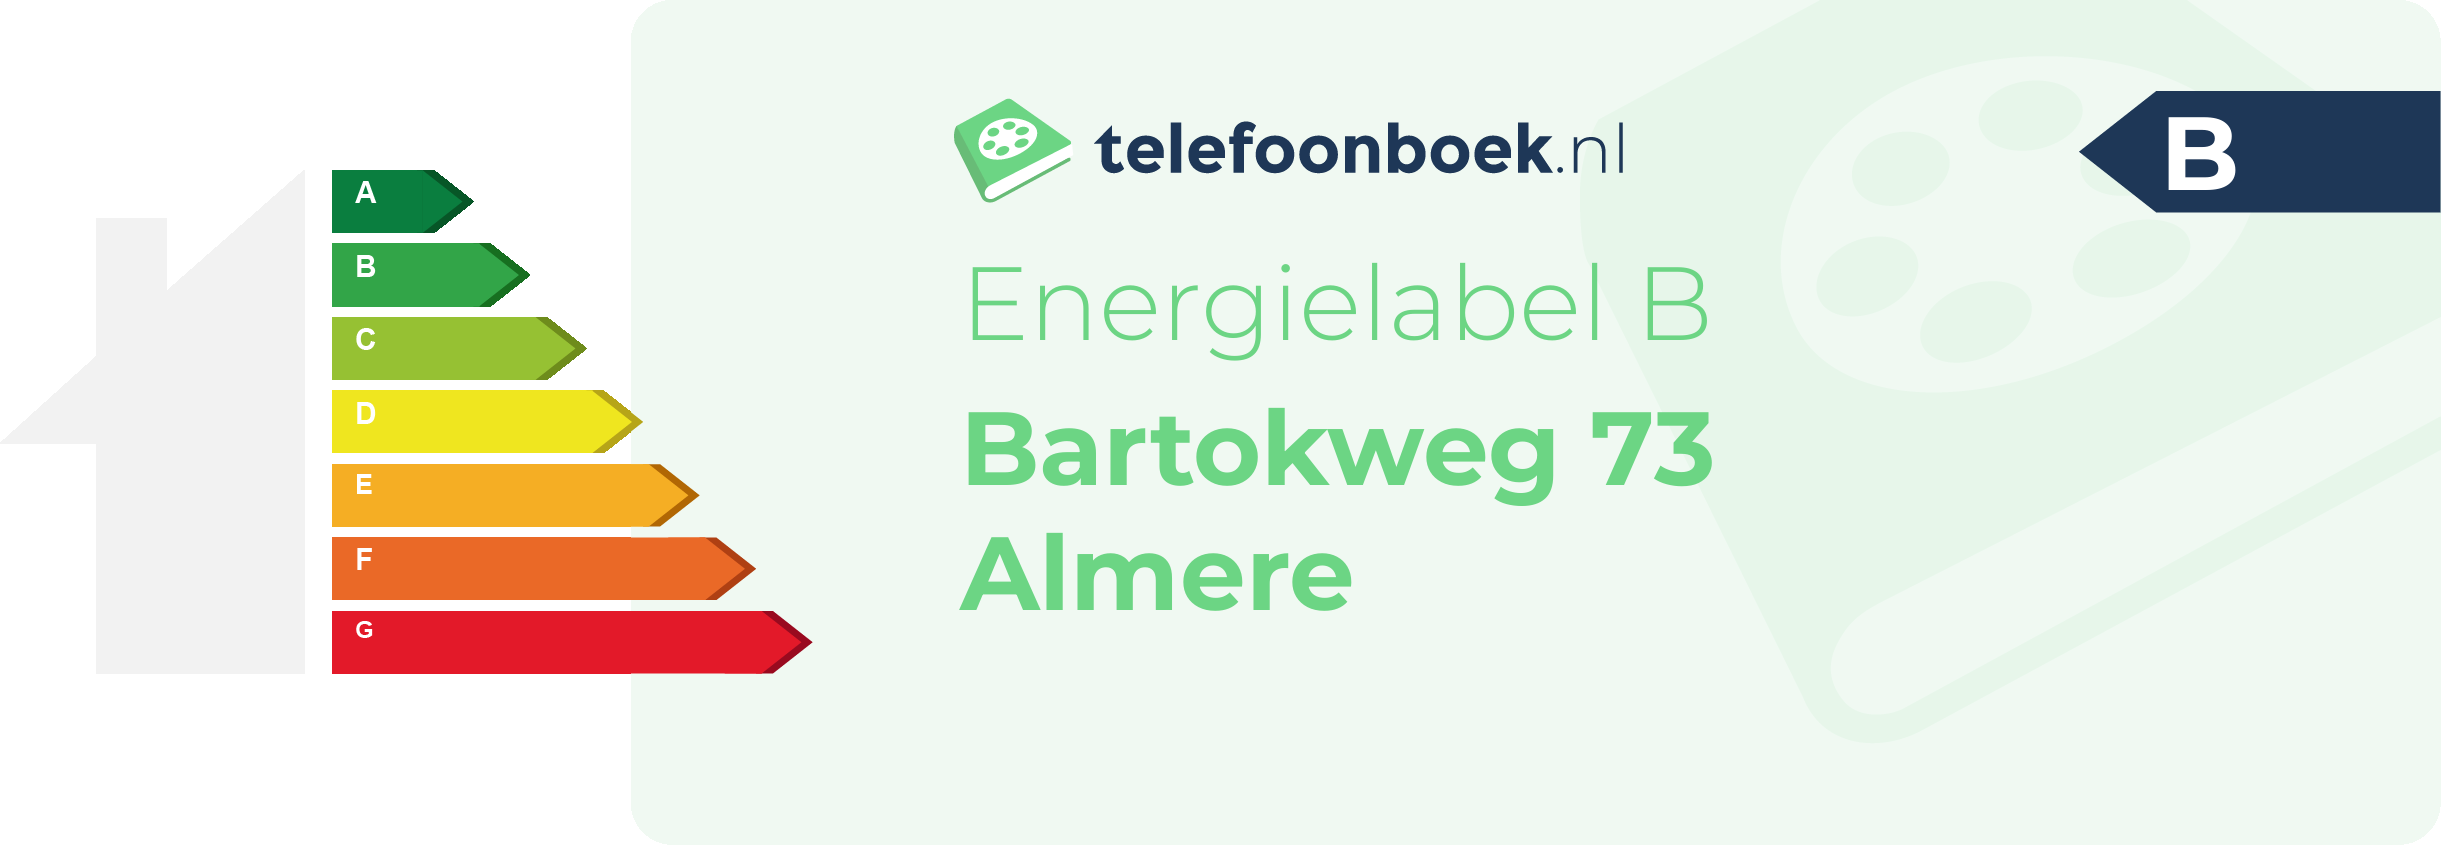 Energielabel Bartokweg 73 Almere